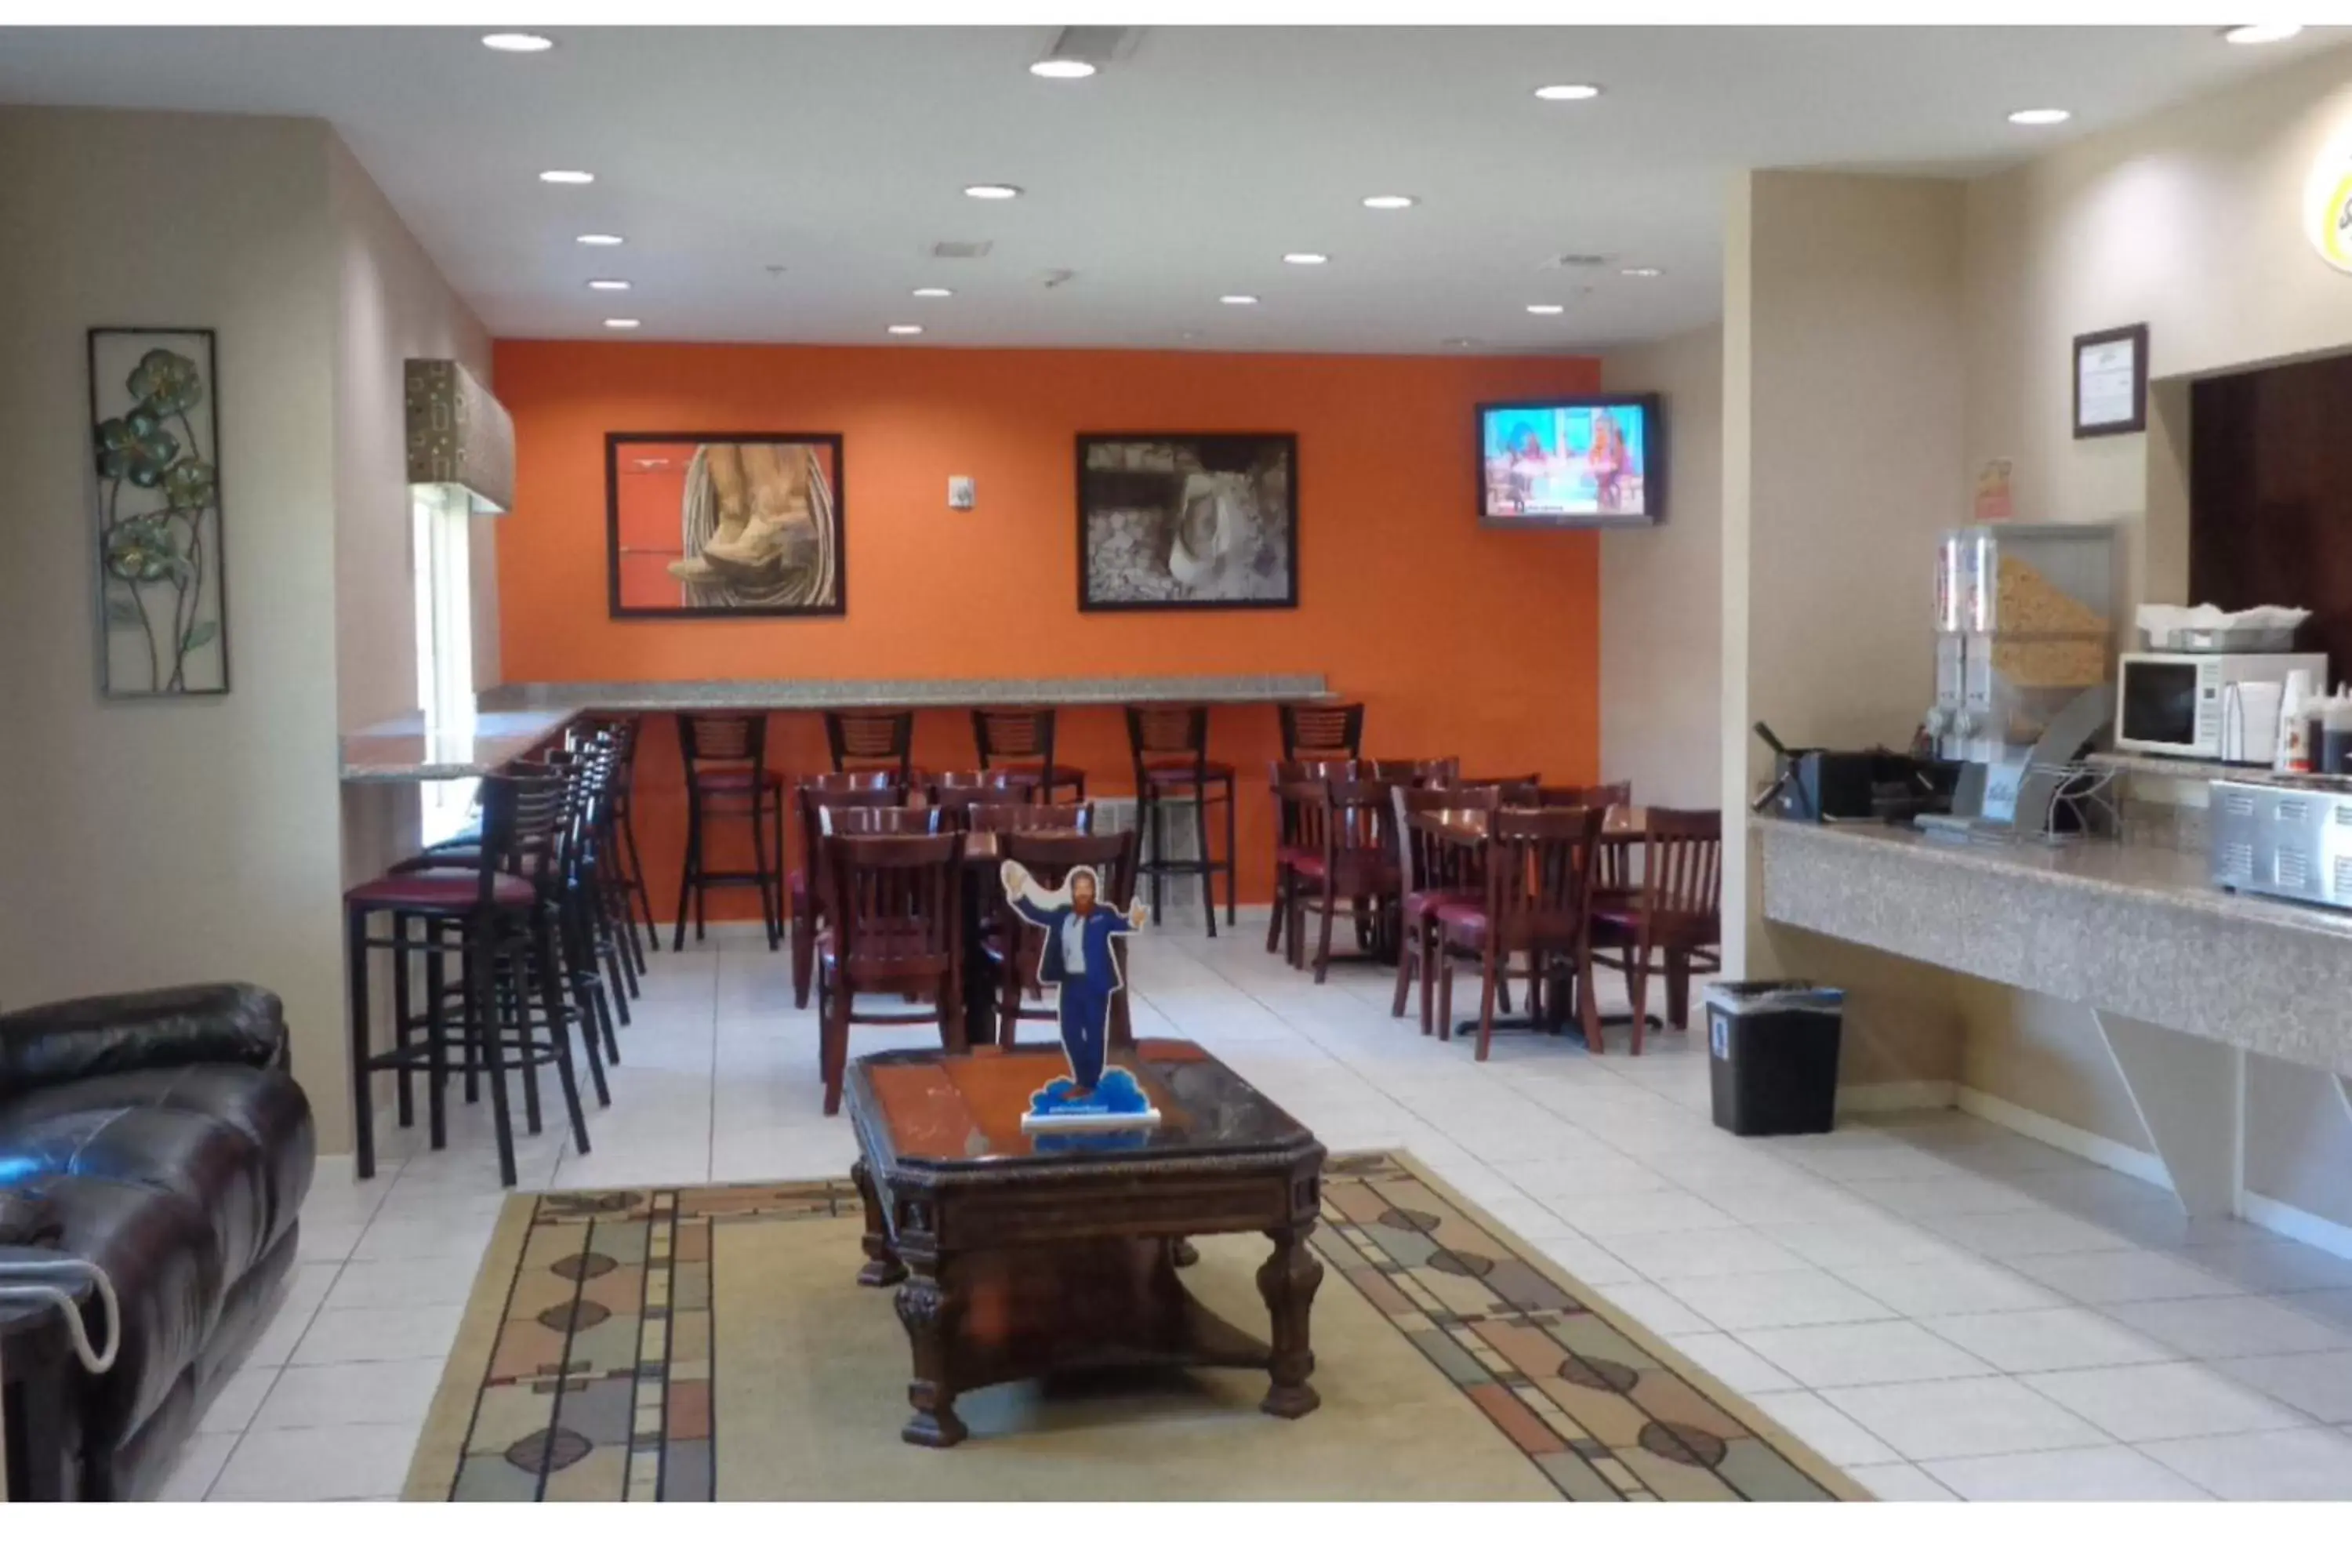 Breakfast, Restaurant/Places to Eat in Super 8 by Wyndham Brenham TX